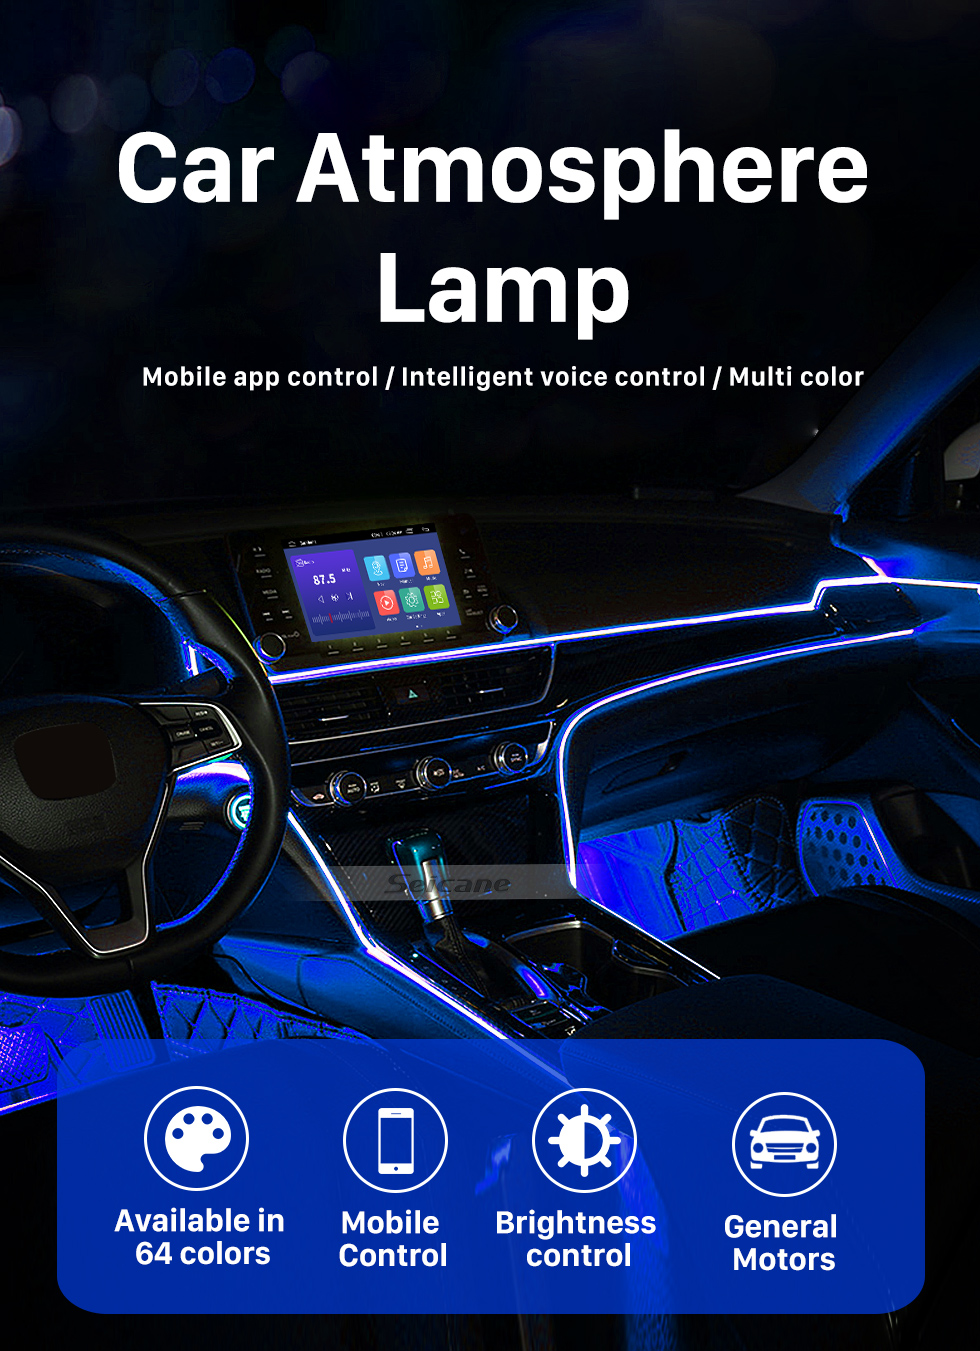 Seicane Автомобильное шасси Bluetooth Control 4 подставки RGB LED Rock Lights для универсального под автомобилем с водонепроницаемым и противокоррозионным покрытием